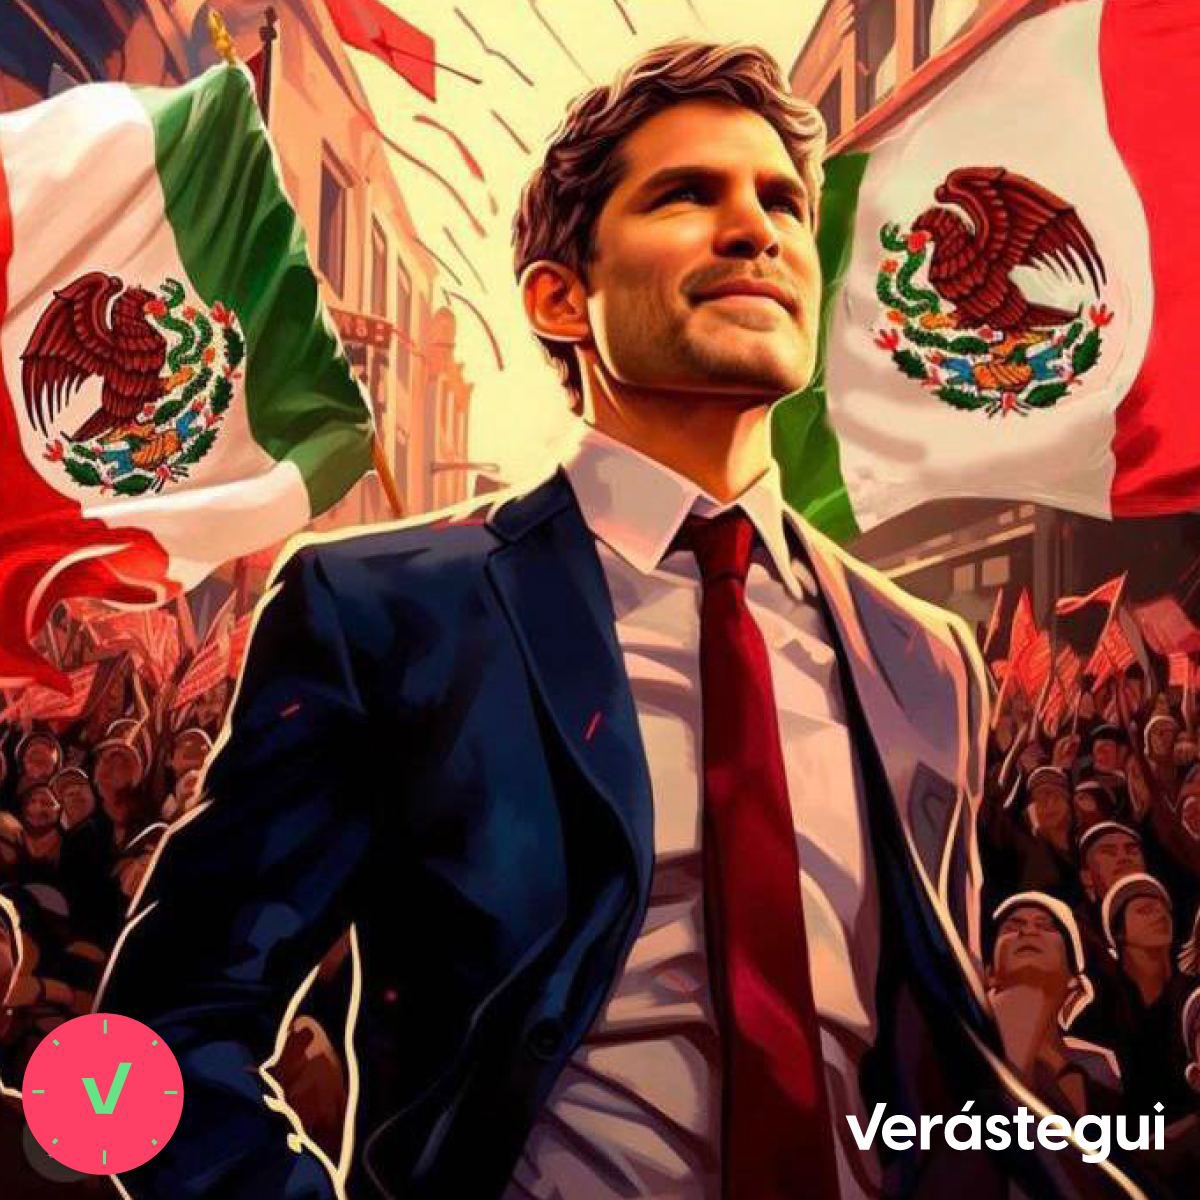 ¿Están de acuerdo que Eduardo Verastegui sería un estupendo Presidente de México? SÍ: ❤️ NO: 🔁